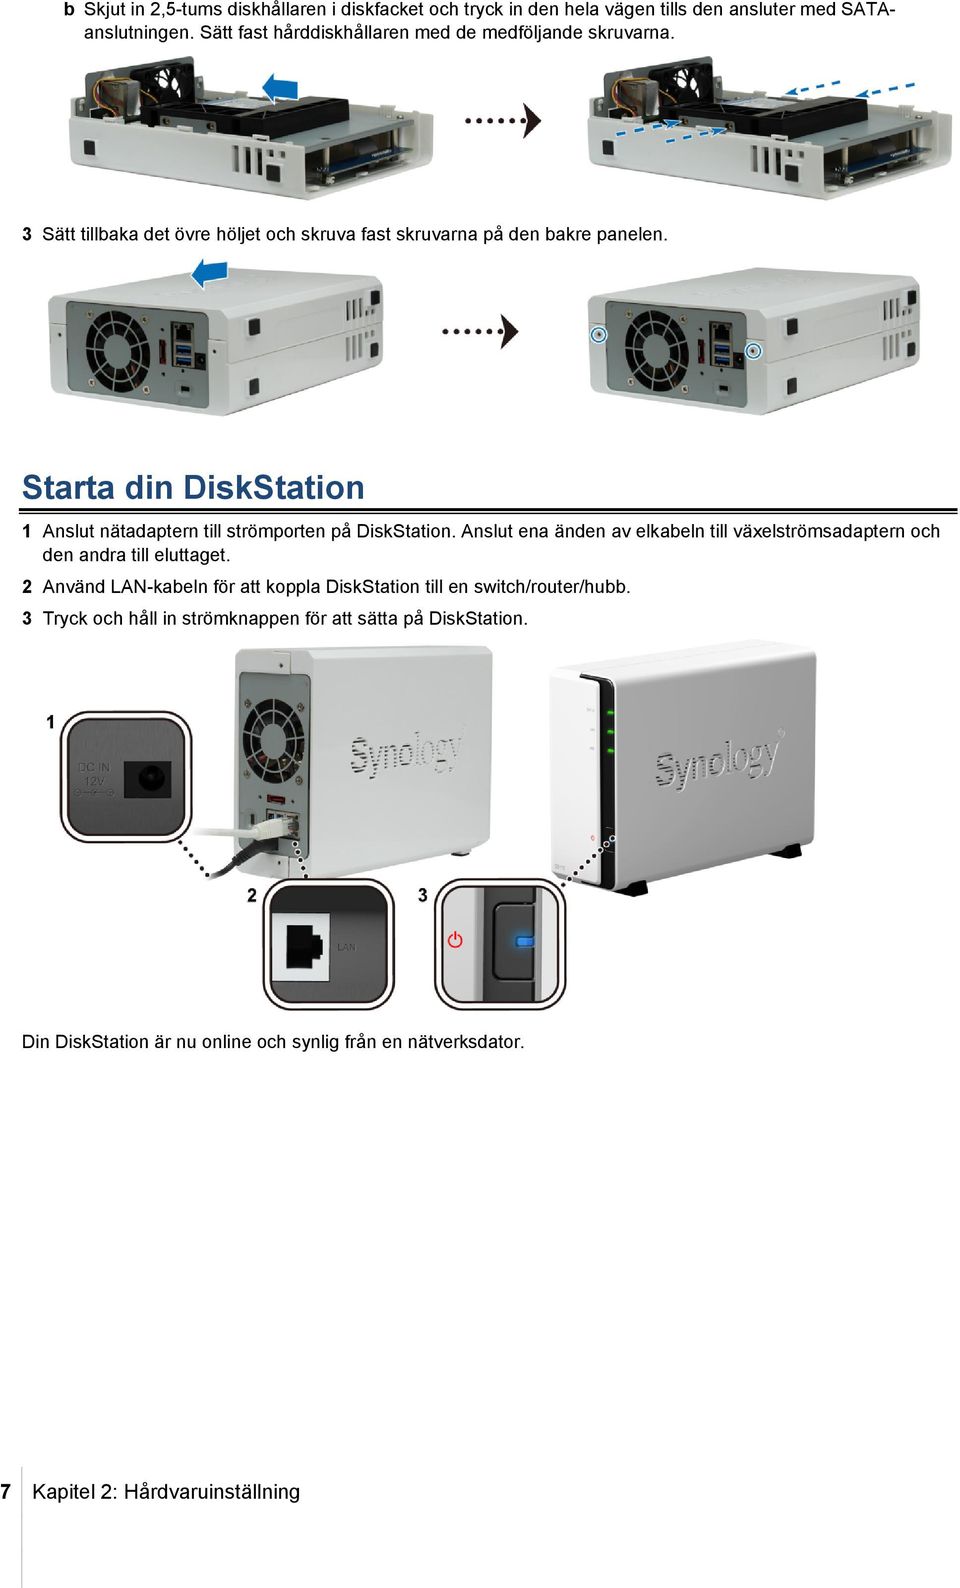 Starta din DiskStation 1 Anslut nätadaptern till strömporten på DiskStation. Anslut ena änden av elkabeln till växelströmsadaptern och den andra till eluttaget.